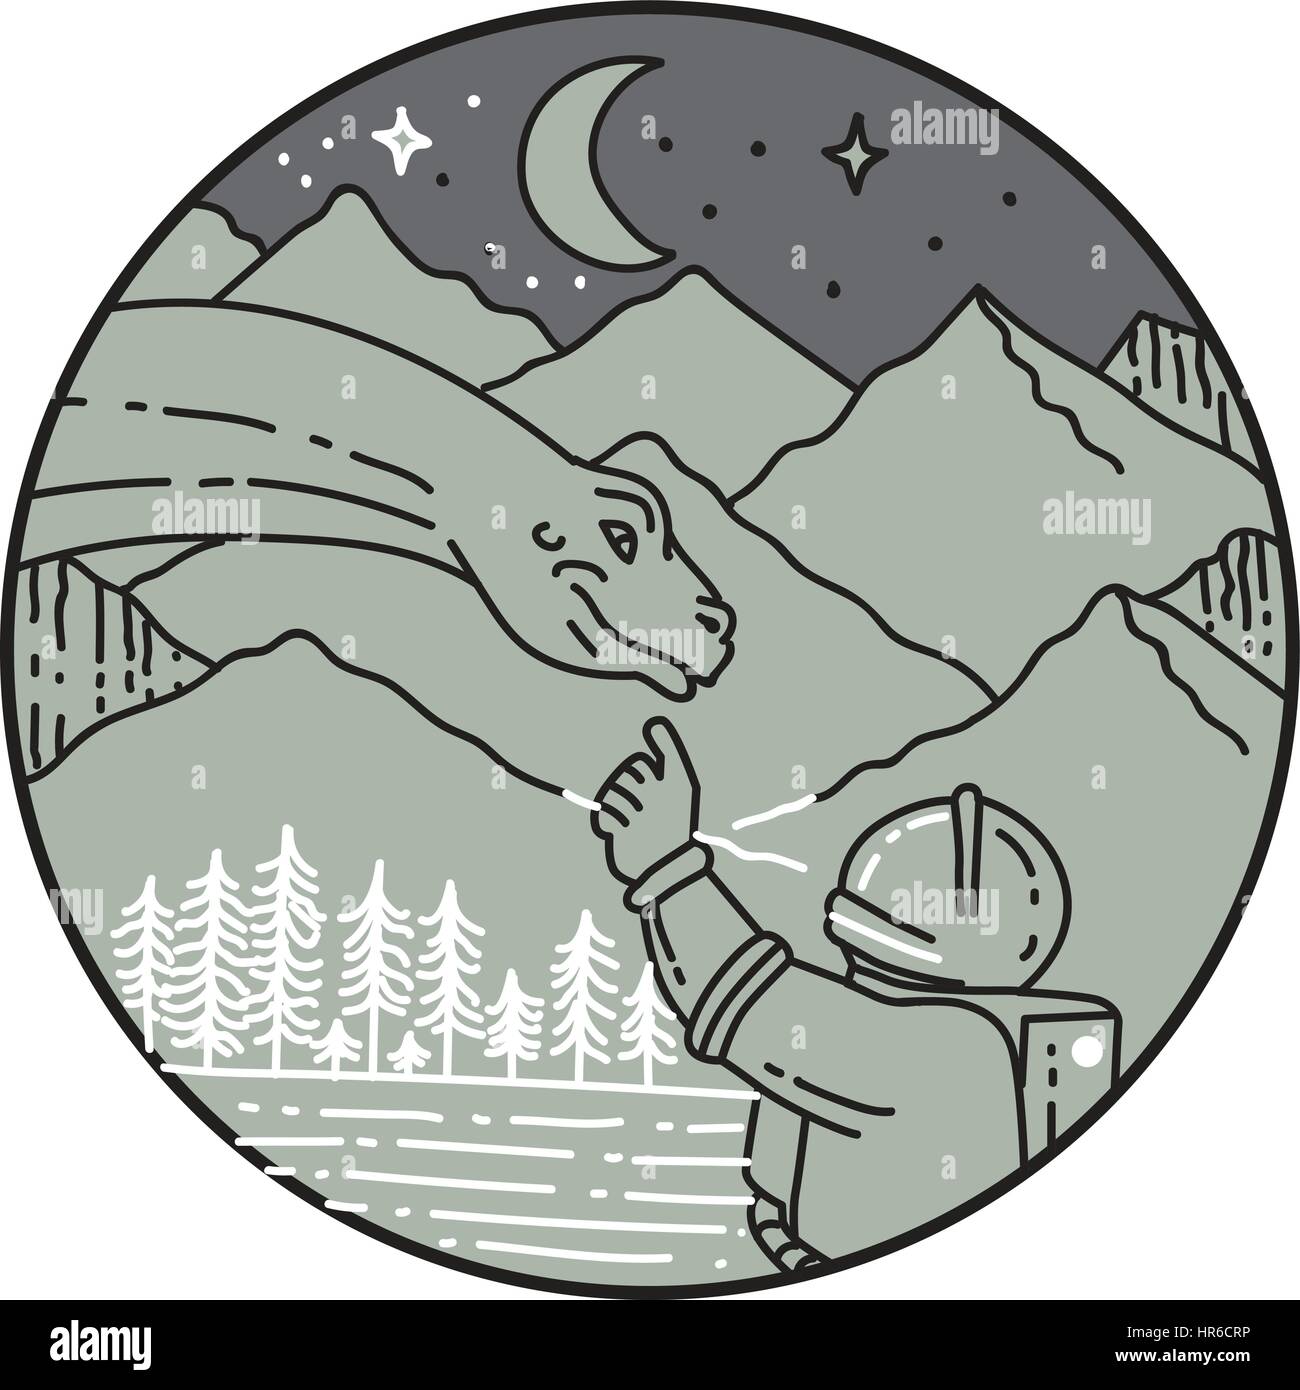 Mono stile linea illustrazione di un astronauta toccando brontosaurus dinosauro set testa all'interno del cerchio con la montagna, la luna, le stelle e gli alberi del backgro Illustrazione Vettoriale